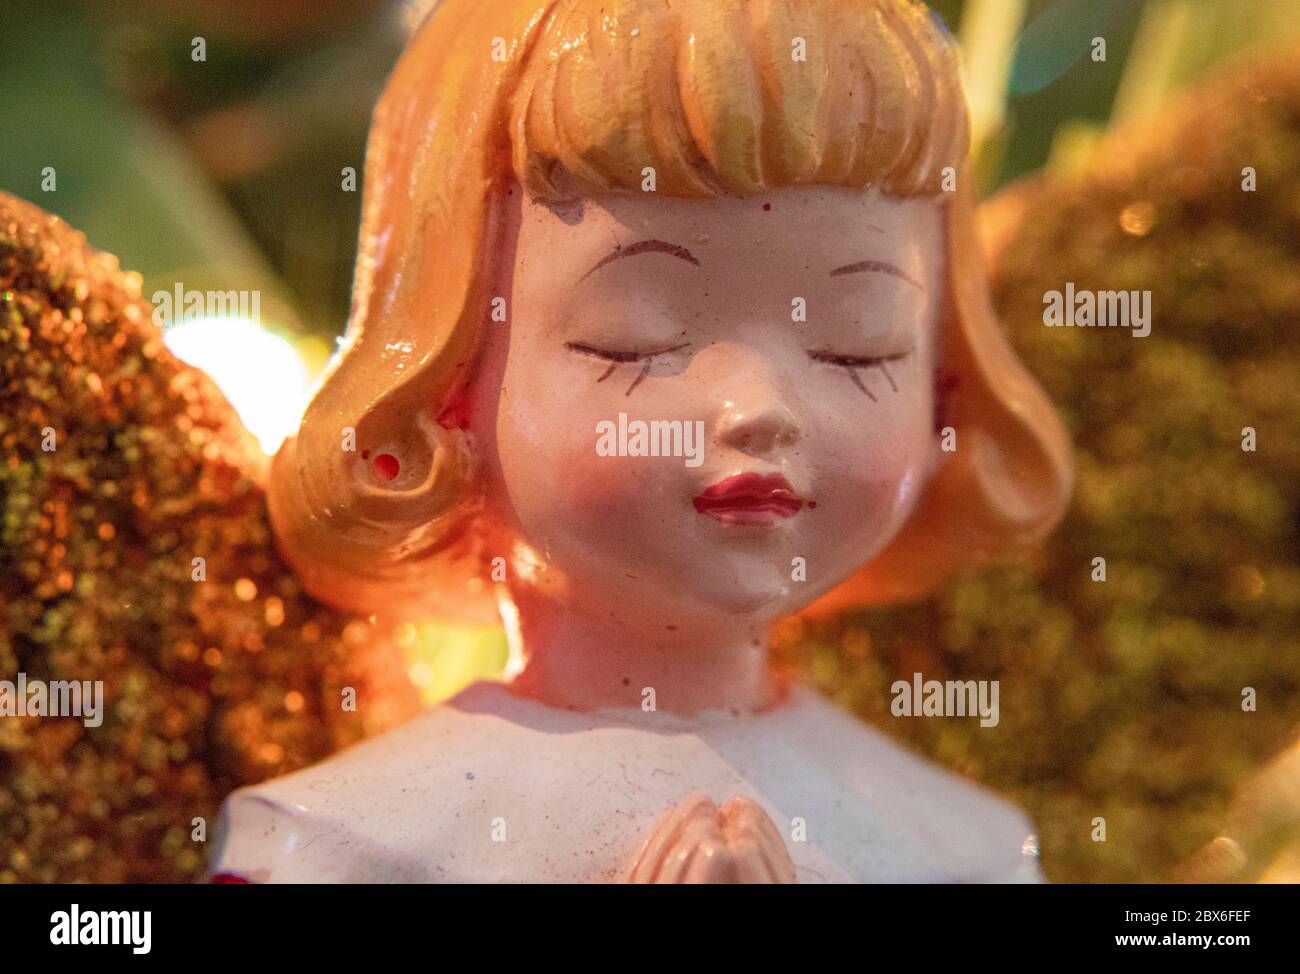 Albero di Natale ornamento di un bambino blonde femmina Angelo chiusura I suoi occhi in preghiera con l'albero di Natale e le luci offuscate In background Foto Stock